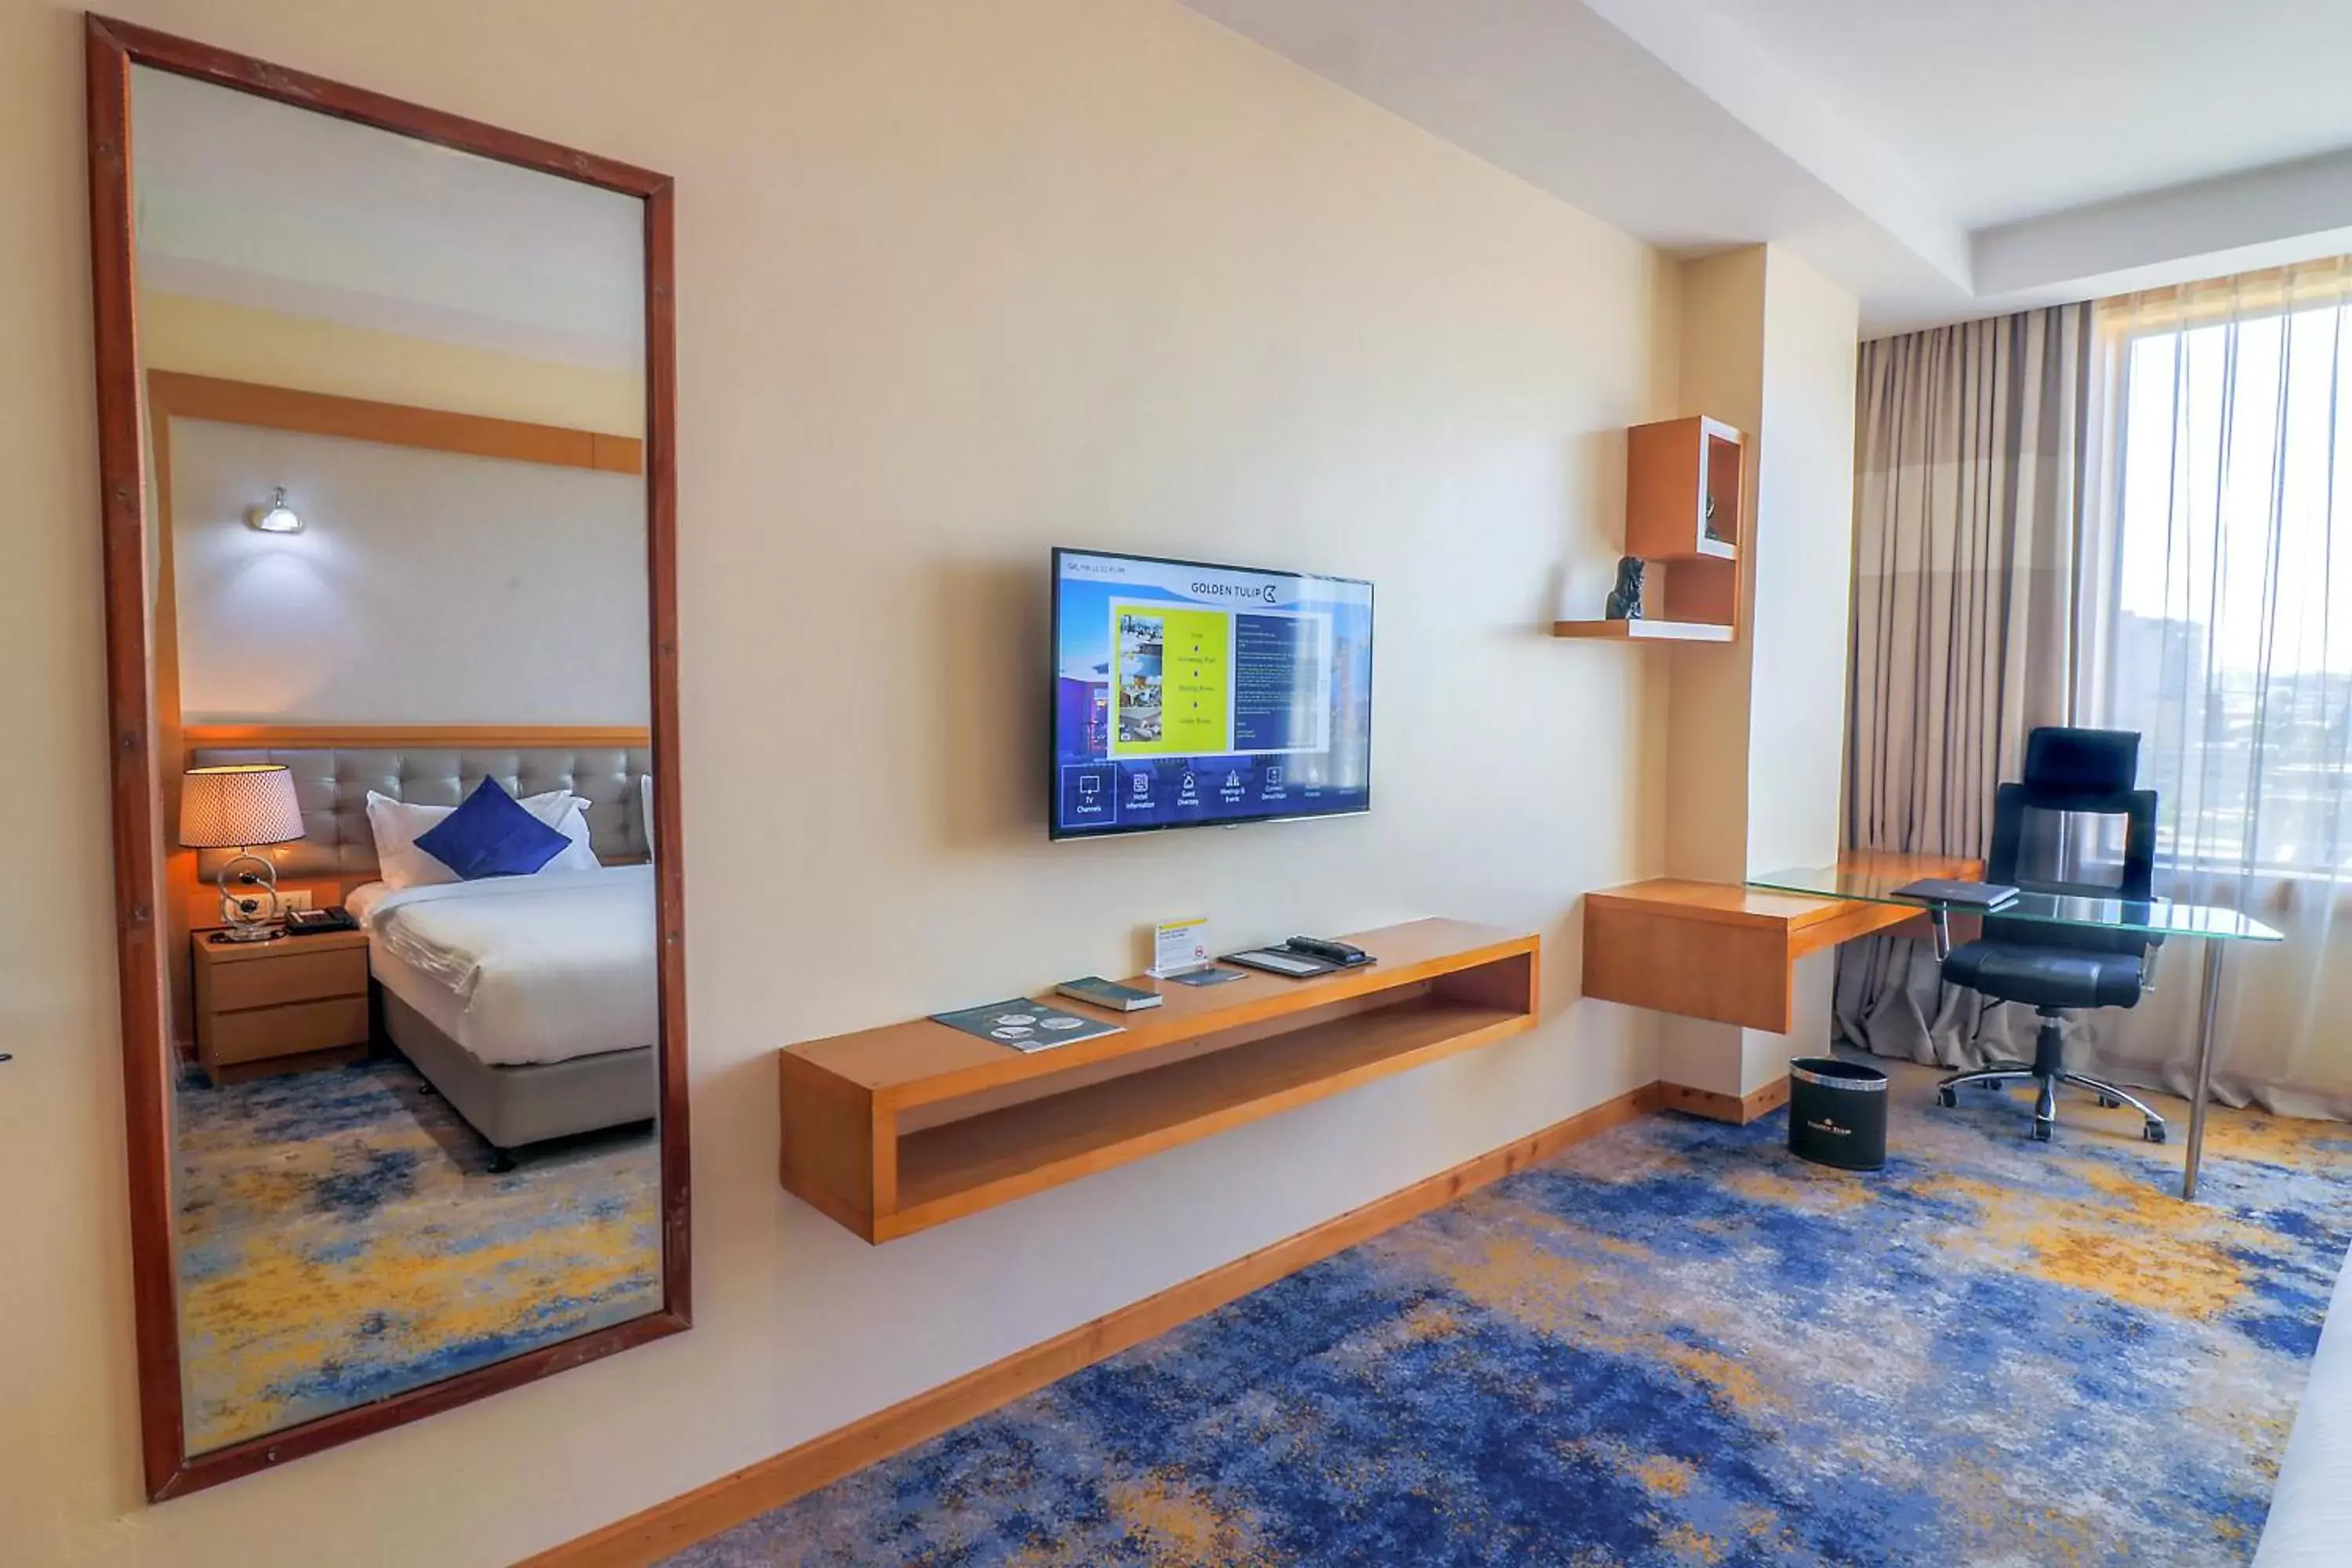 Bedroom, TV/Entertainment Center in Golden Tulip Westlands Nairobi